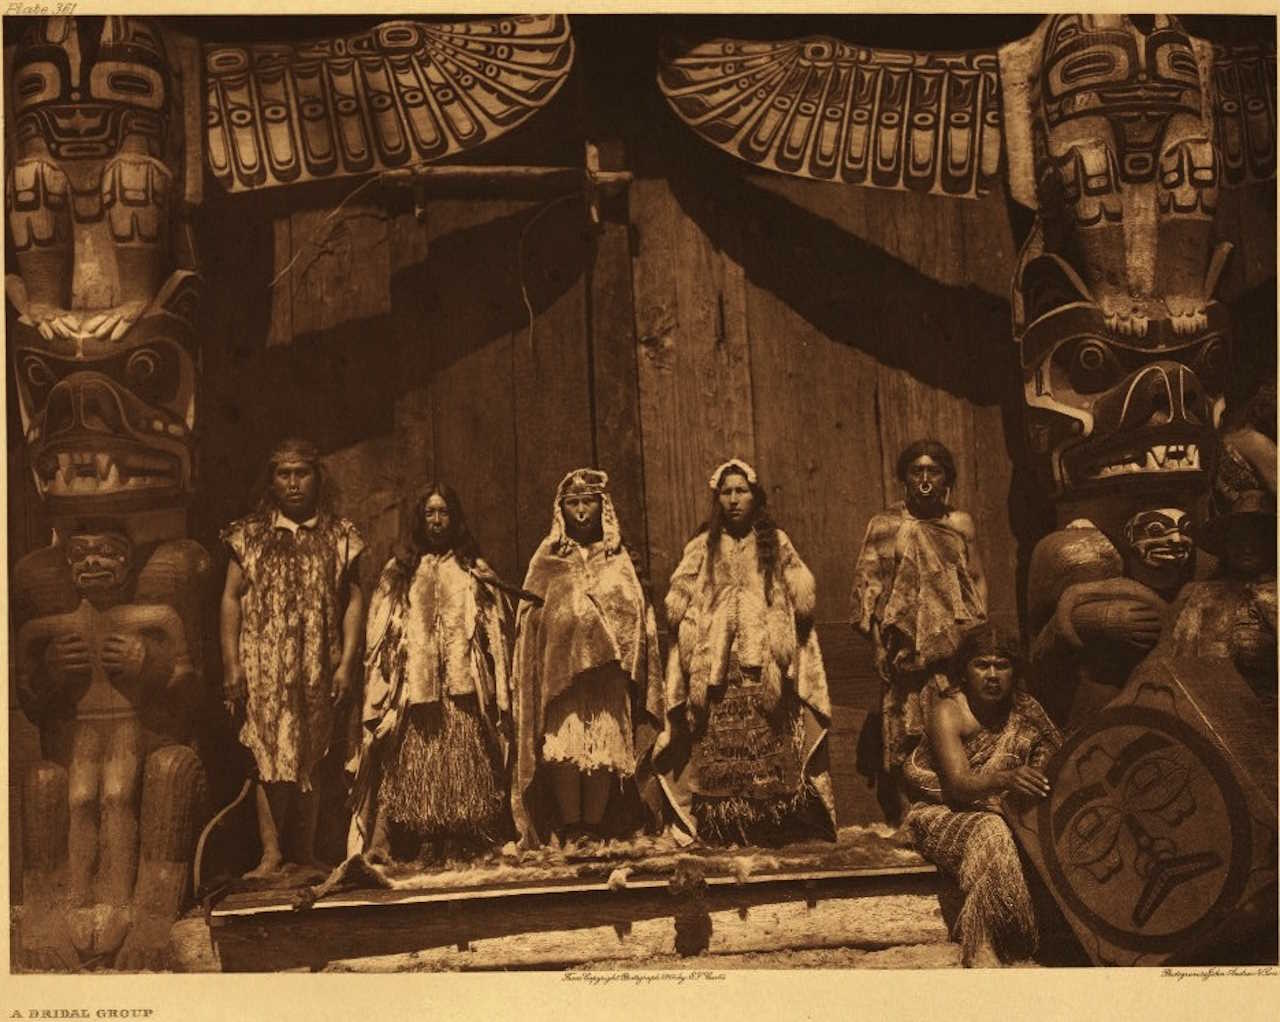 Потлач у народу квакіутль з танцівниками та співаками на весіллі 1914 року, з нареченою у центрі фото. Edward S. Curtis / Wikimedia Commons